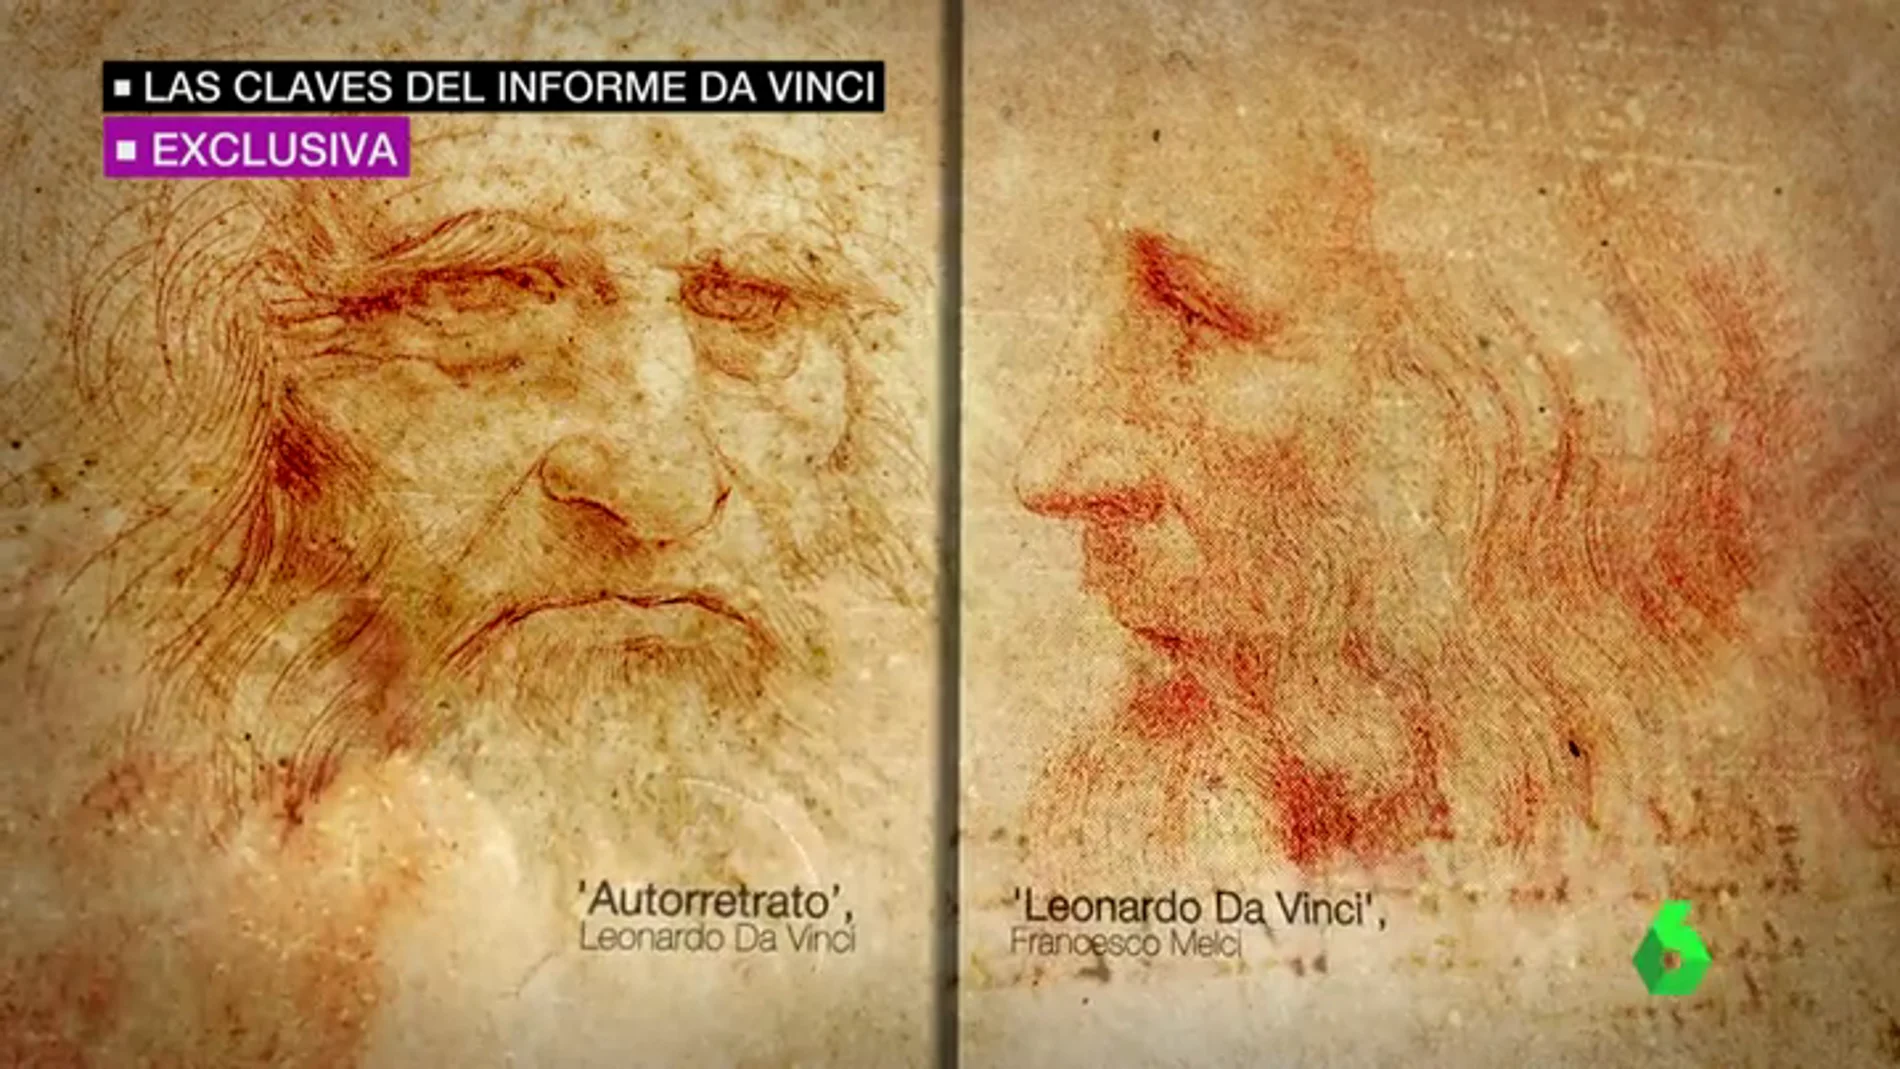 Frame 45.697621 de: EXCLUSIVA | Estas son las pruebas que mostrarían que el autorretrato de da Vinci no corresponde con su cara real